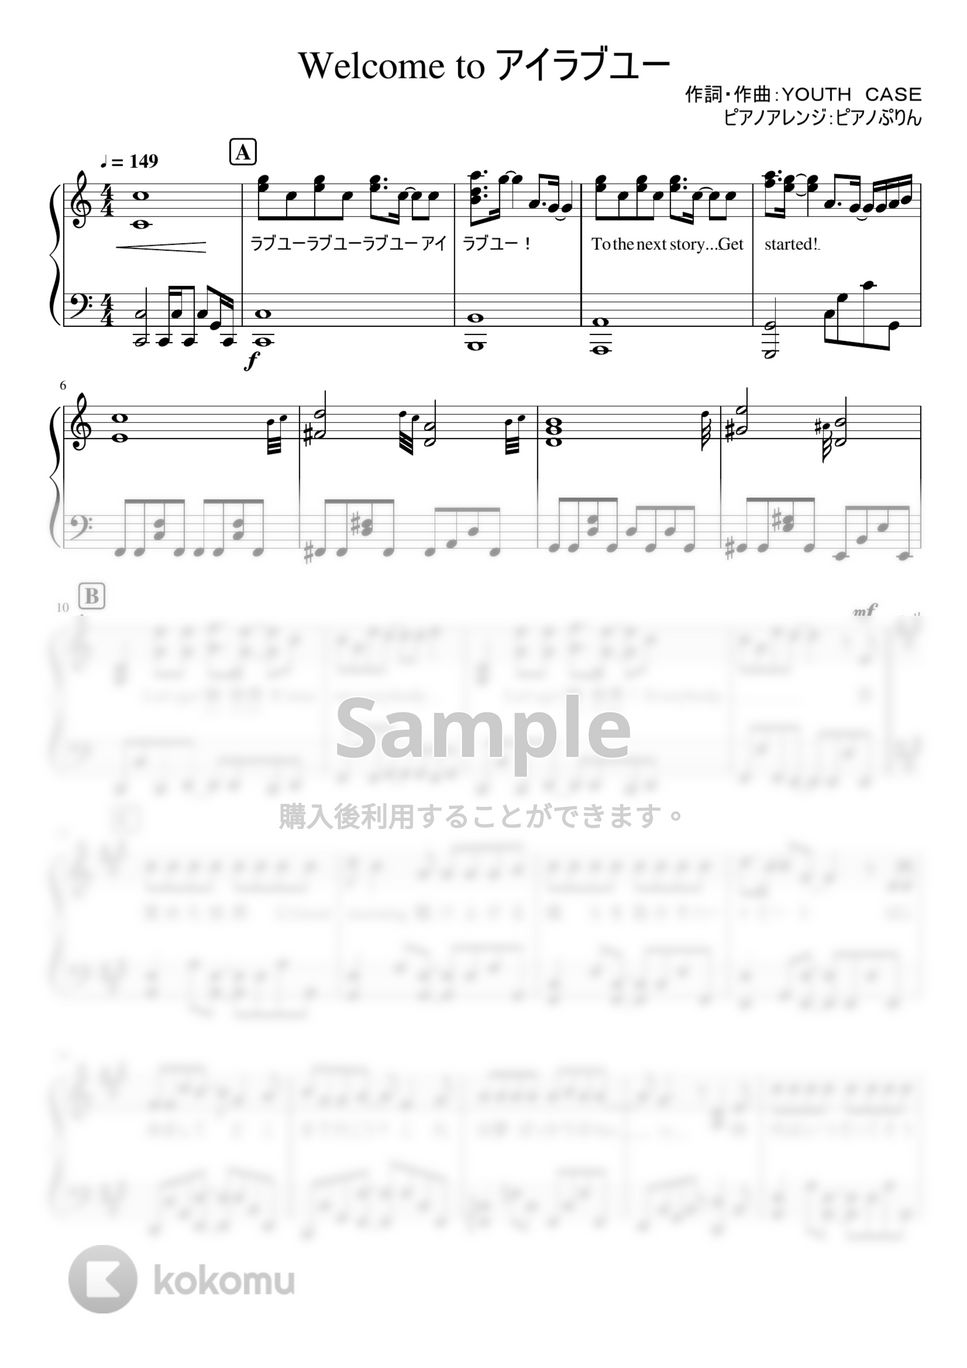 なにわ男子 - Welcome to アイラブユー (1stアルバム「1st Love」収録曲。) by ピアノぷりん